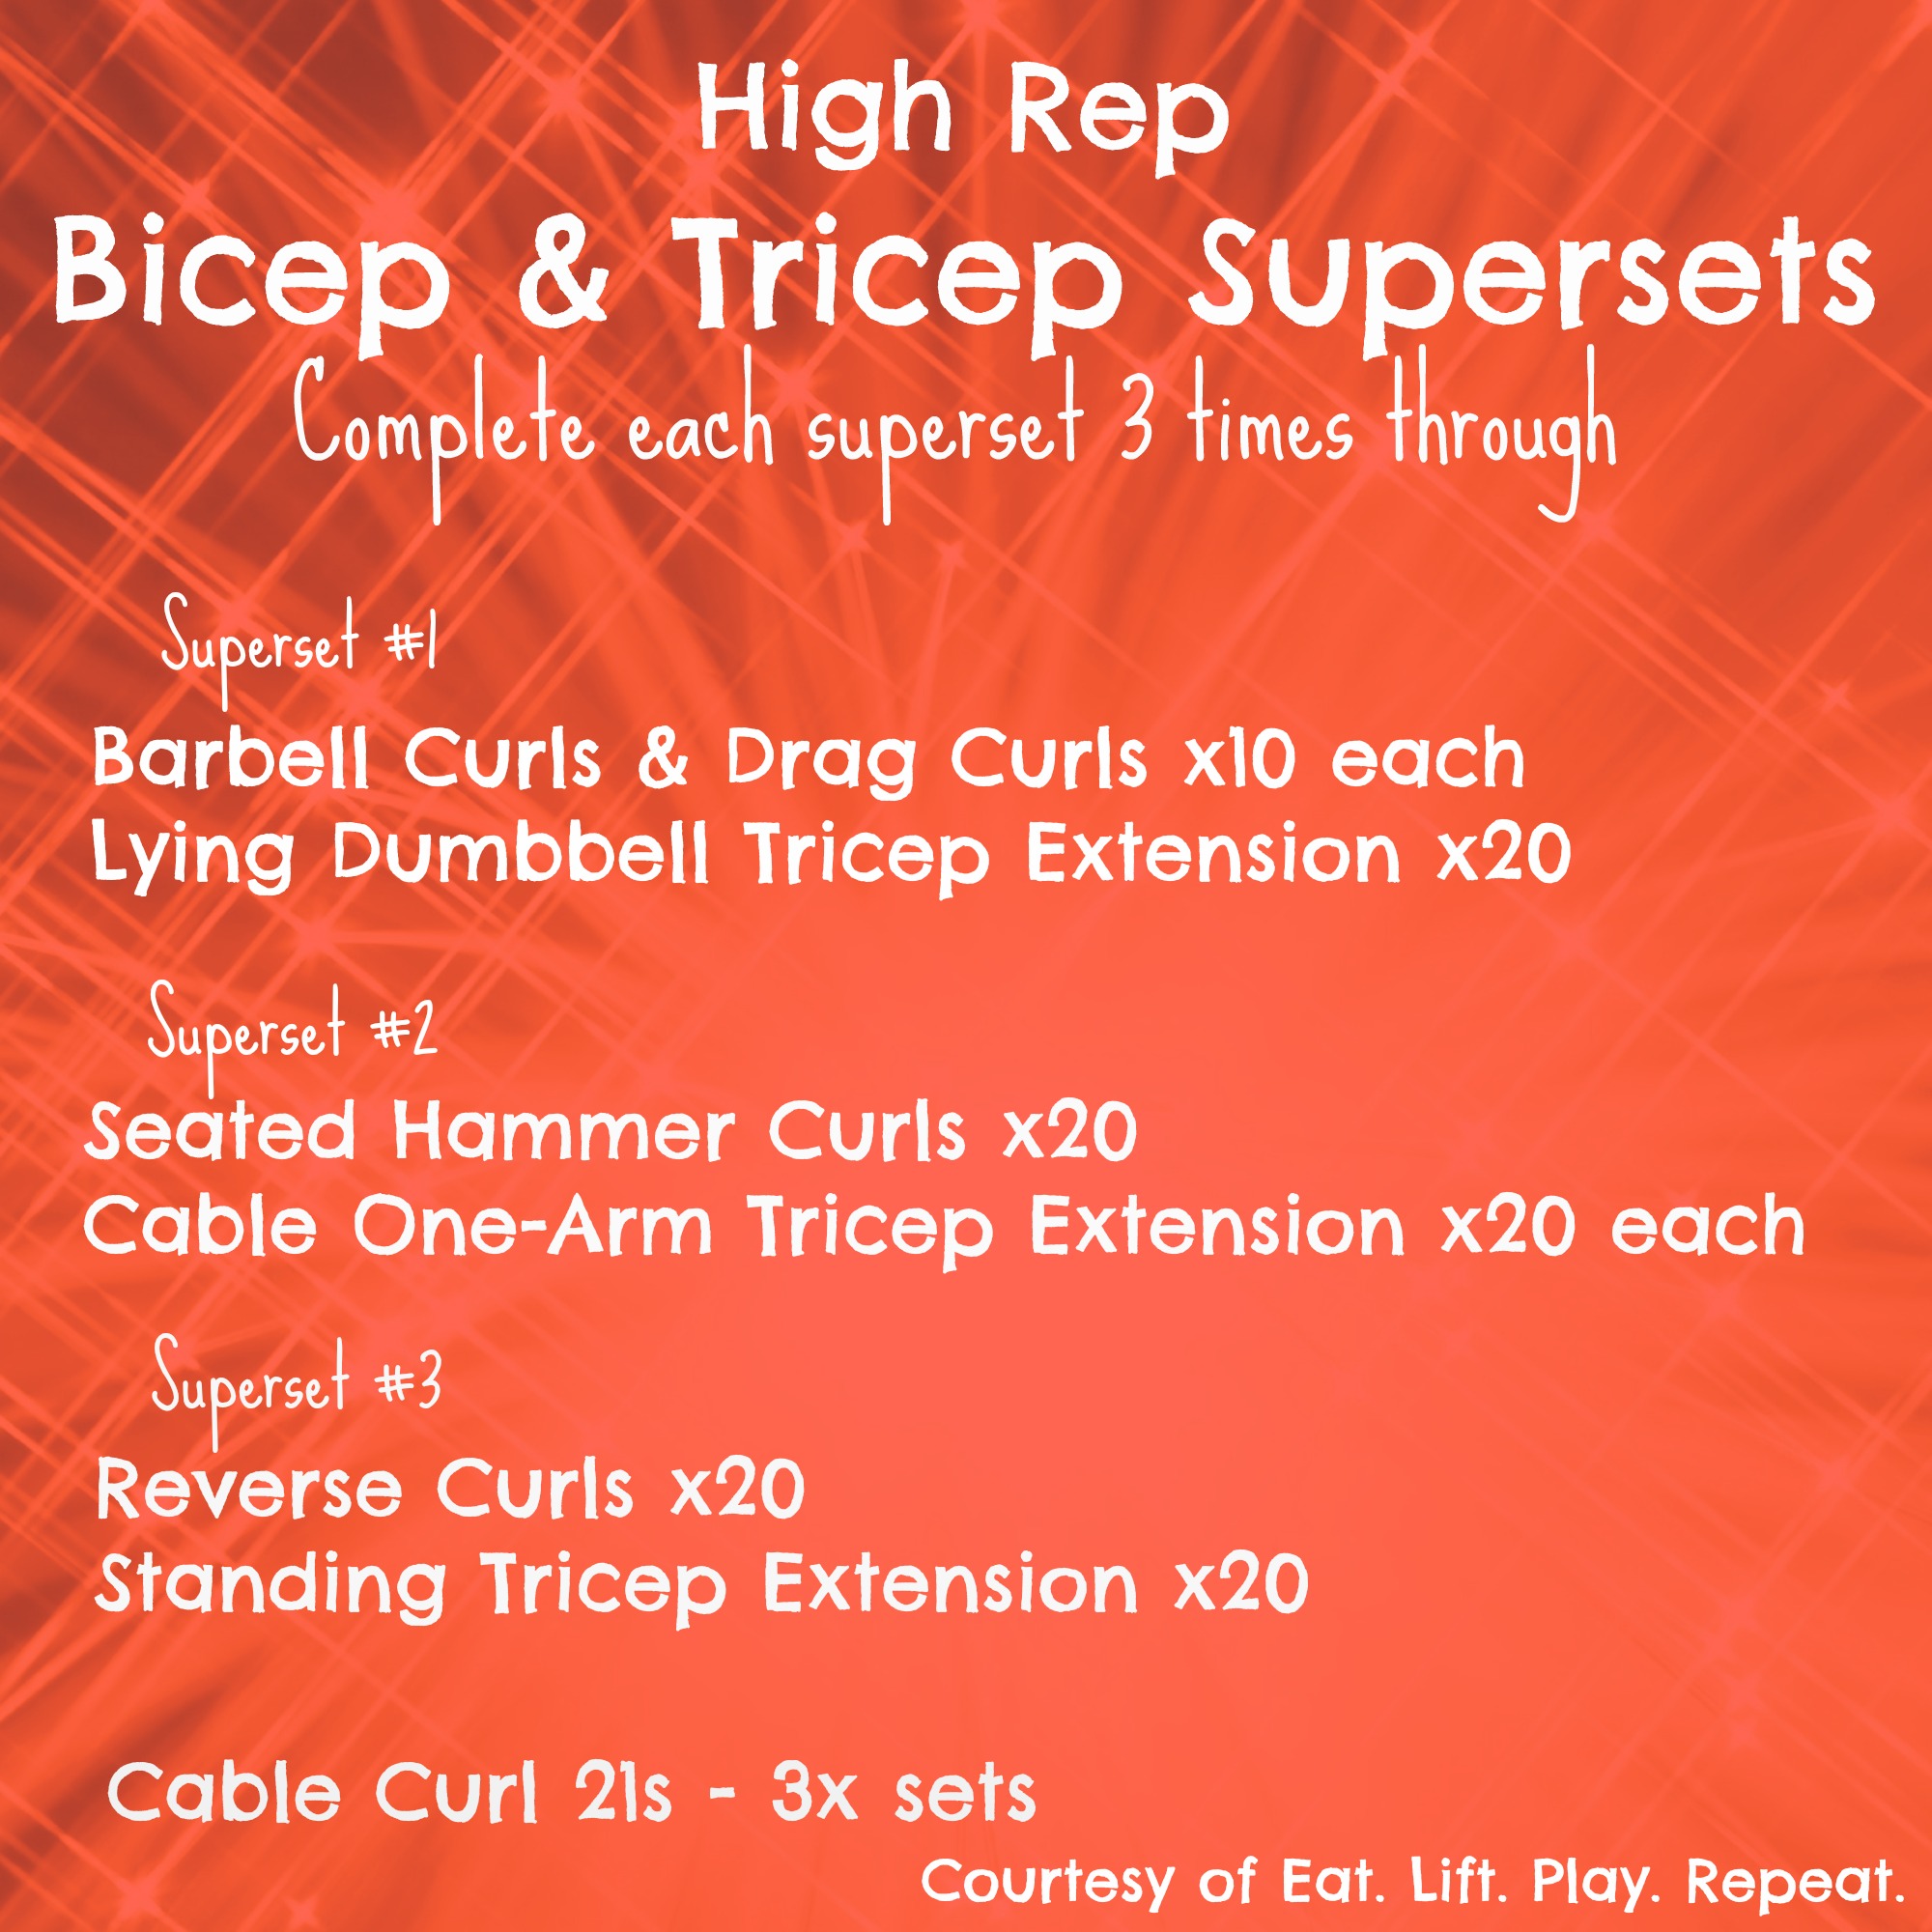 8 Best biceps and triceps AT GYM SUPERSET TRICEPS & BICEPS 